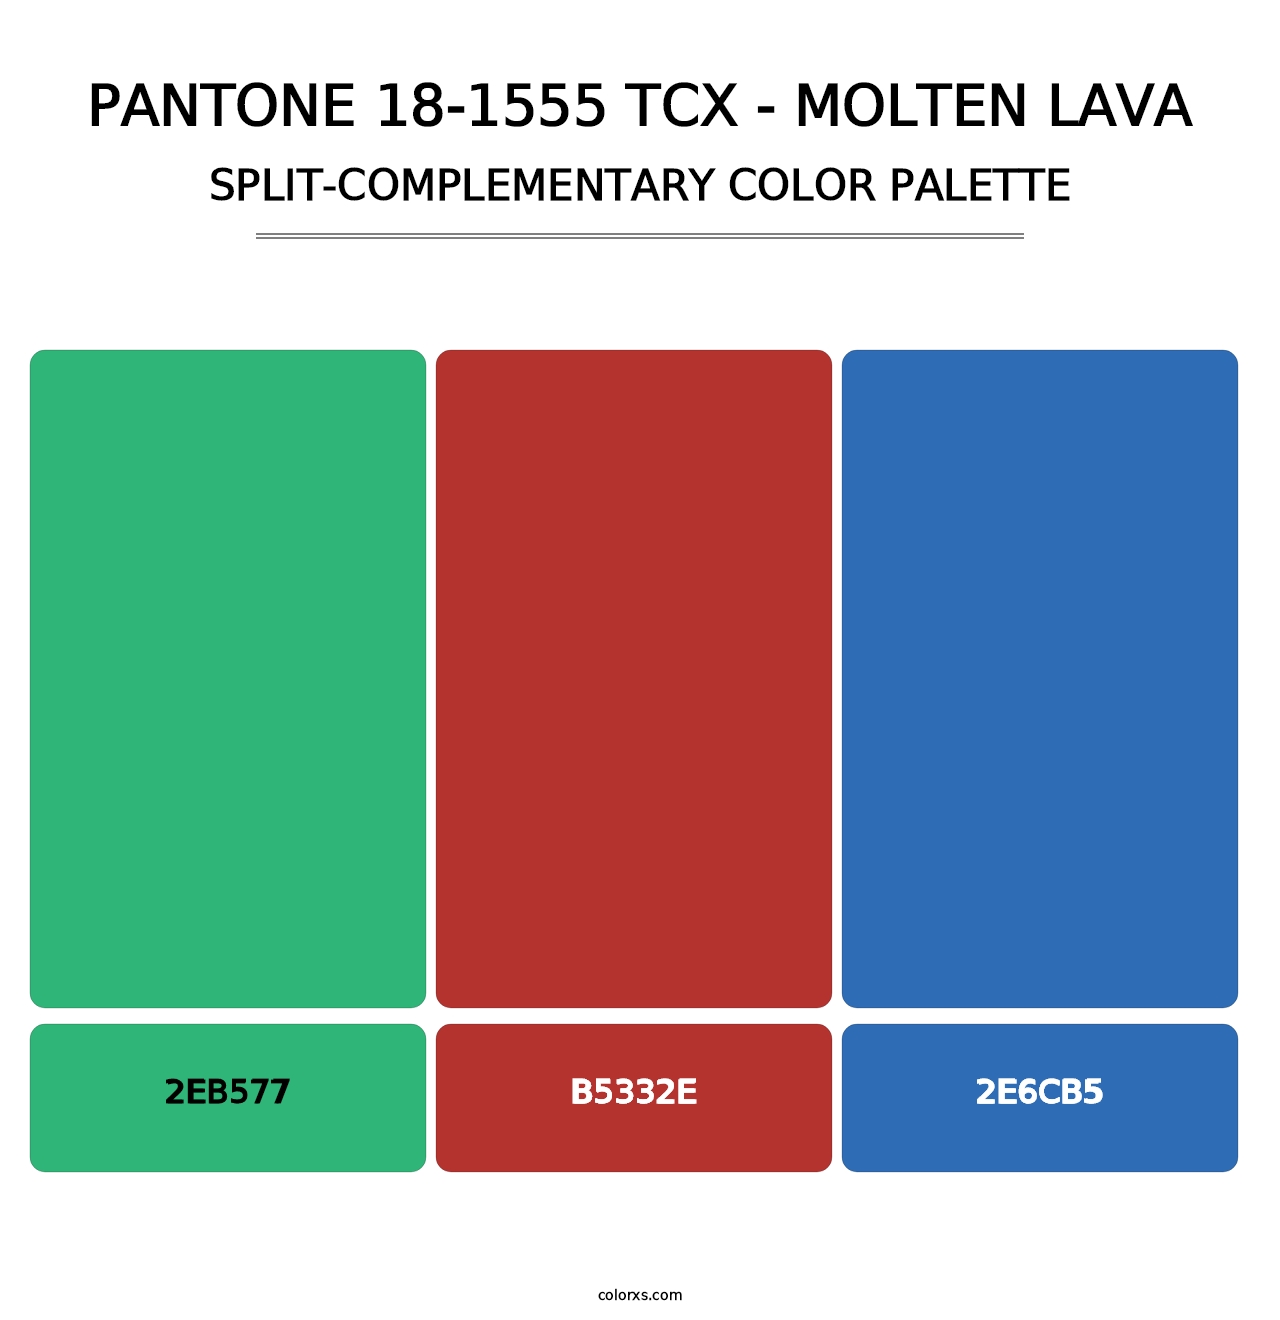 PANTONE 18-1555 TCX - Molten Lava - Split-Complementary Color Palette